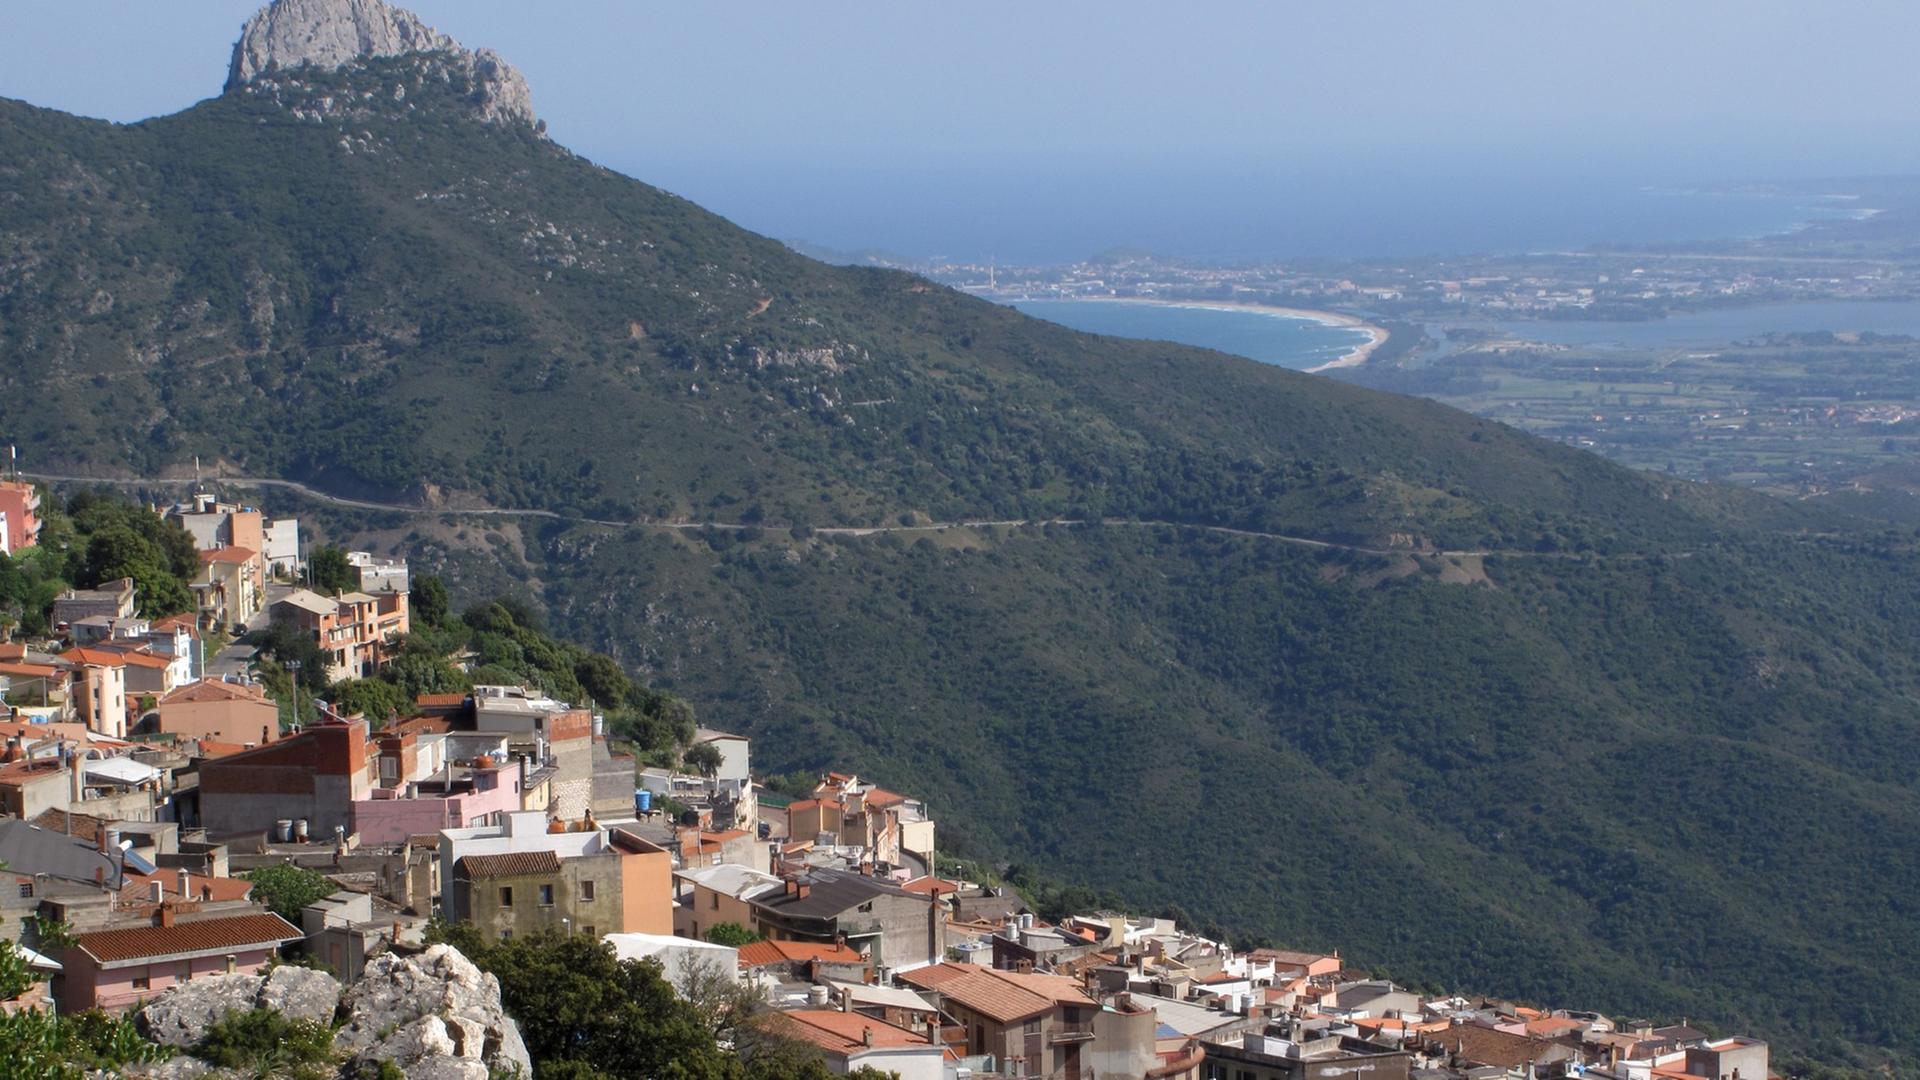 Blick auf die an einem Berghang gelegene Ortschaft Baunei in der Ogliastra auf der italienischen Insel Sardinien (Aufnahme vom 20.05.2010). Als Ogliastra bezeichnet man die südlich des Golfs von Orosei liegende Küstenebene um Tortoli und Arbatax samt der sie umgebenden Berghänge.